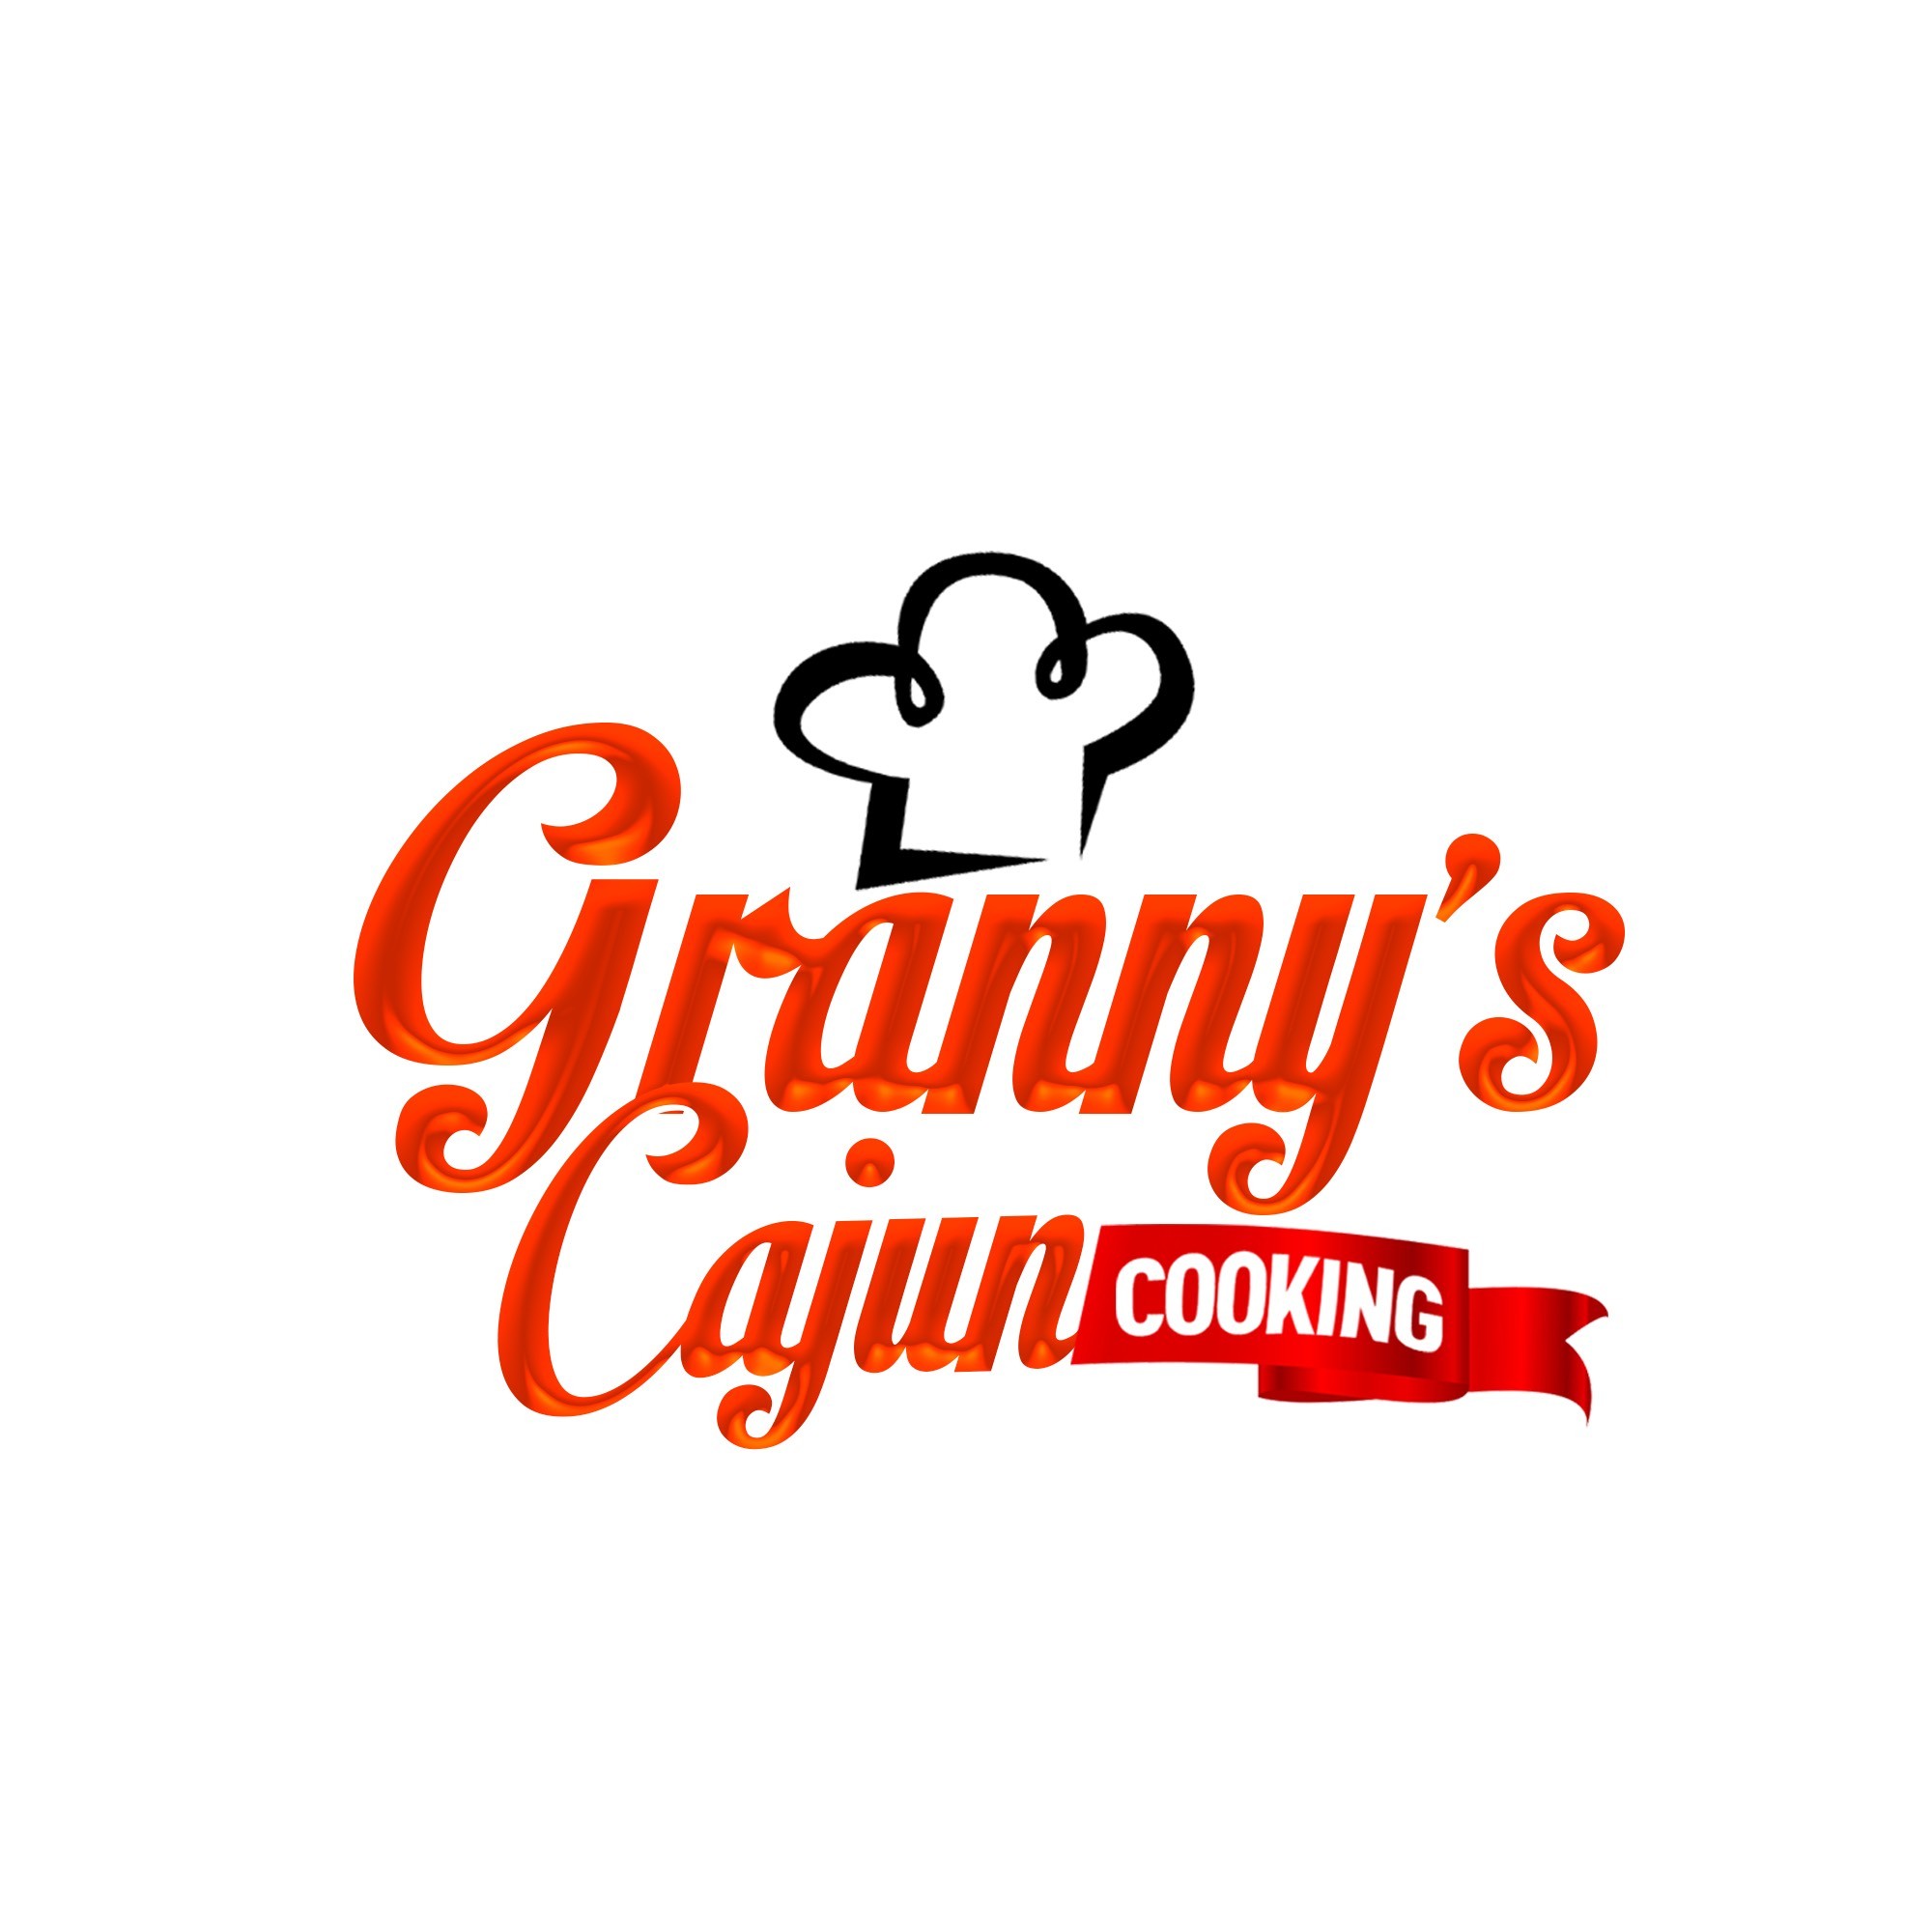 Grannys Cajun Cooking LLC logo